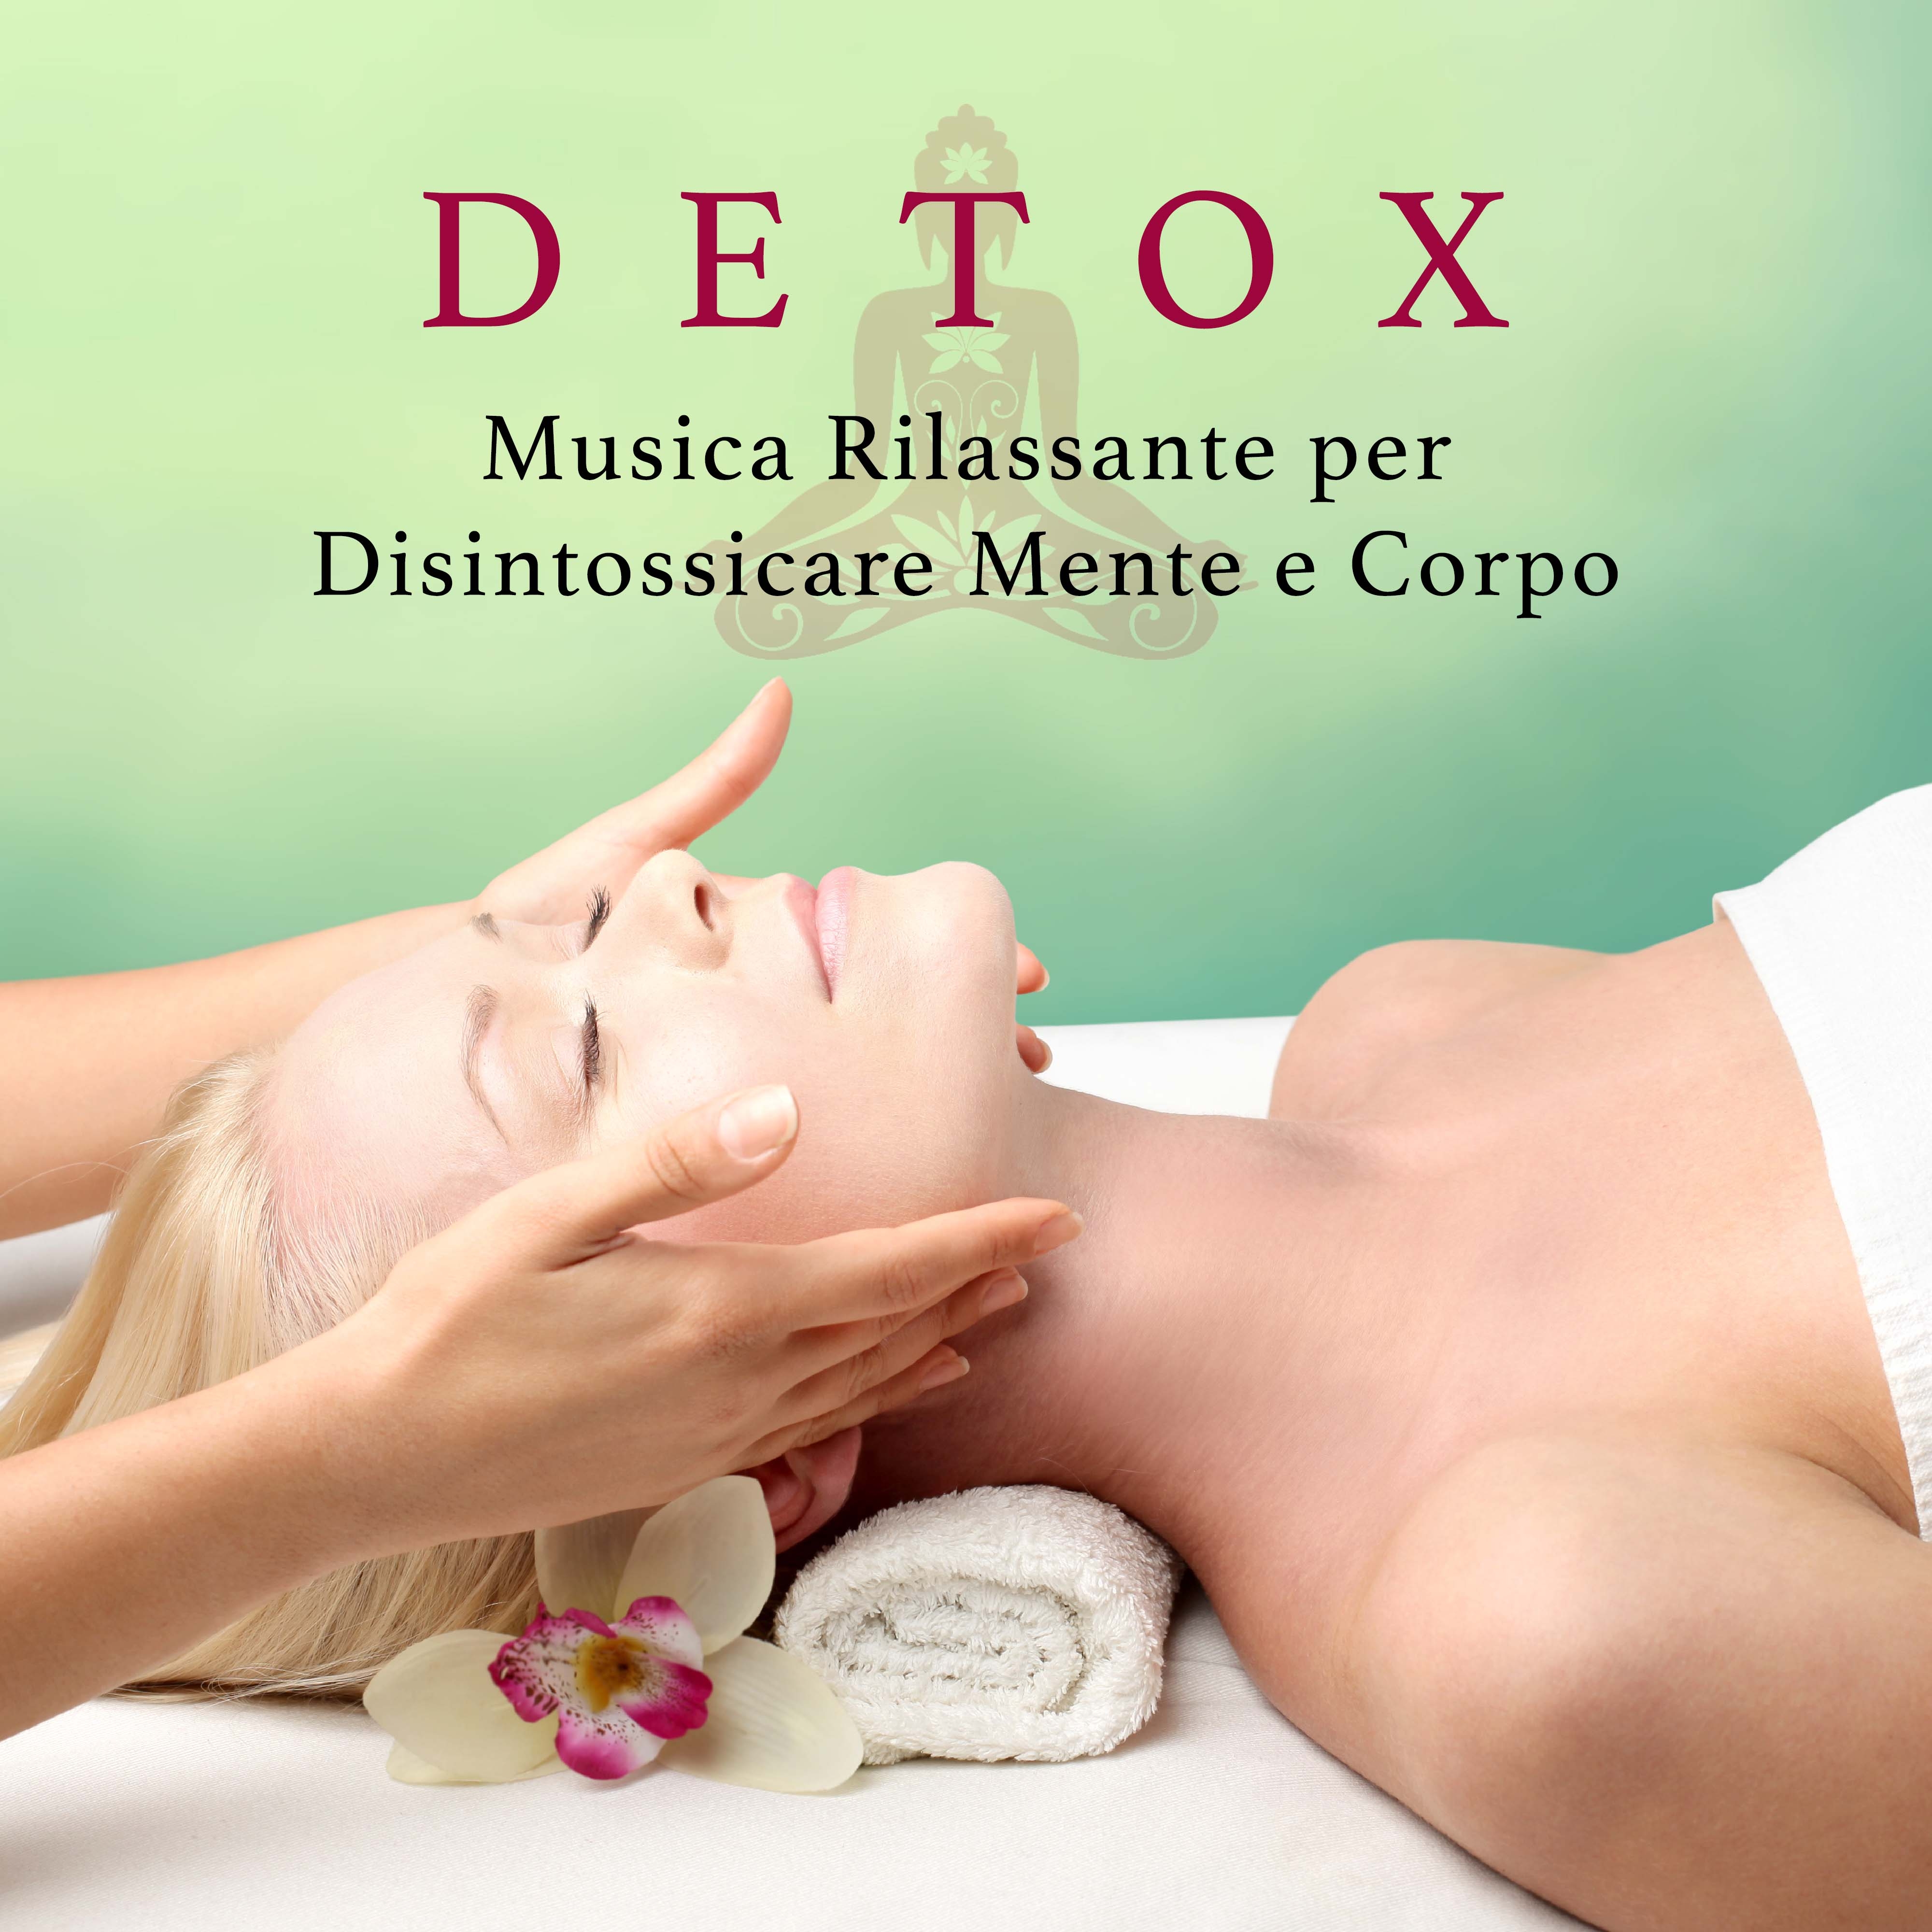 Detox - Musica Rilassante per Disintossicare Mente e Corpo